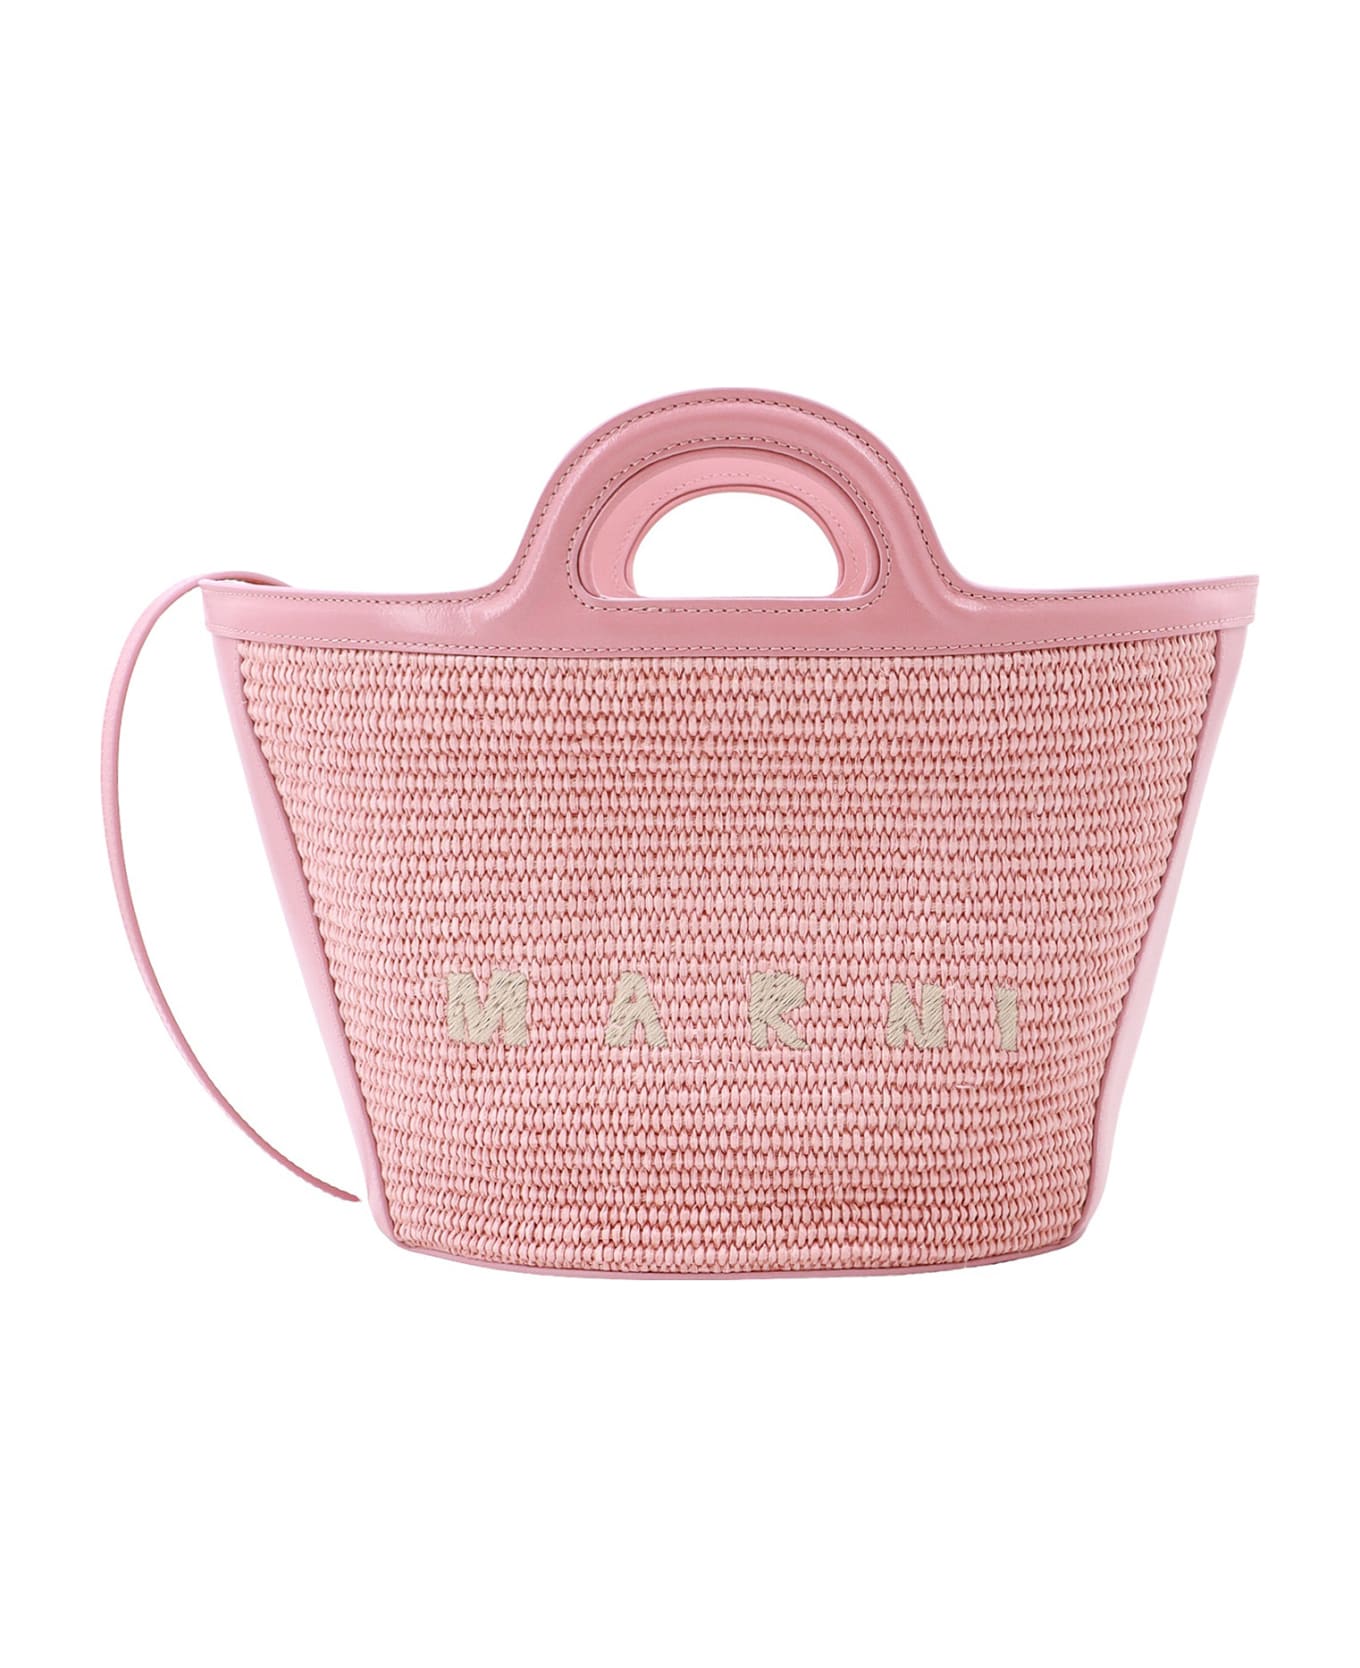 Marni Tropicalia Handbag - Pink